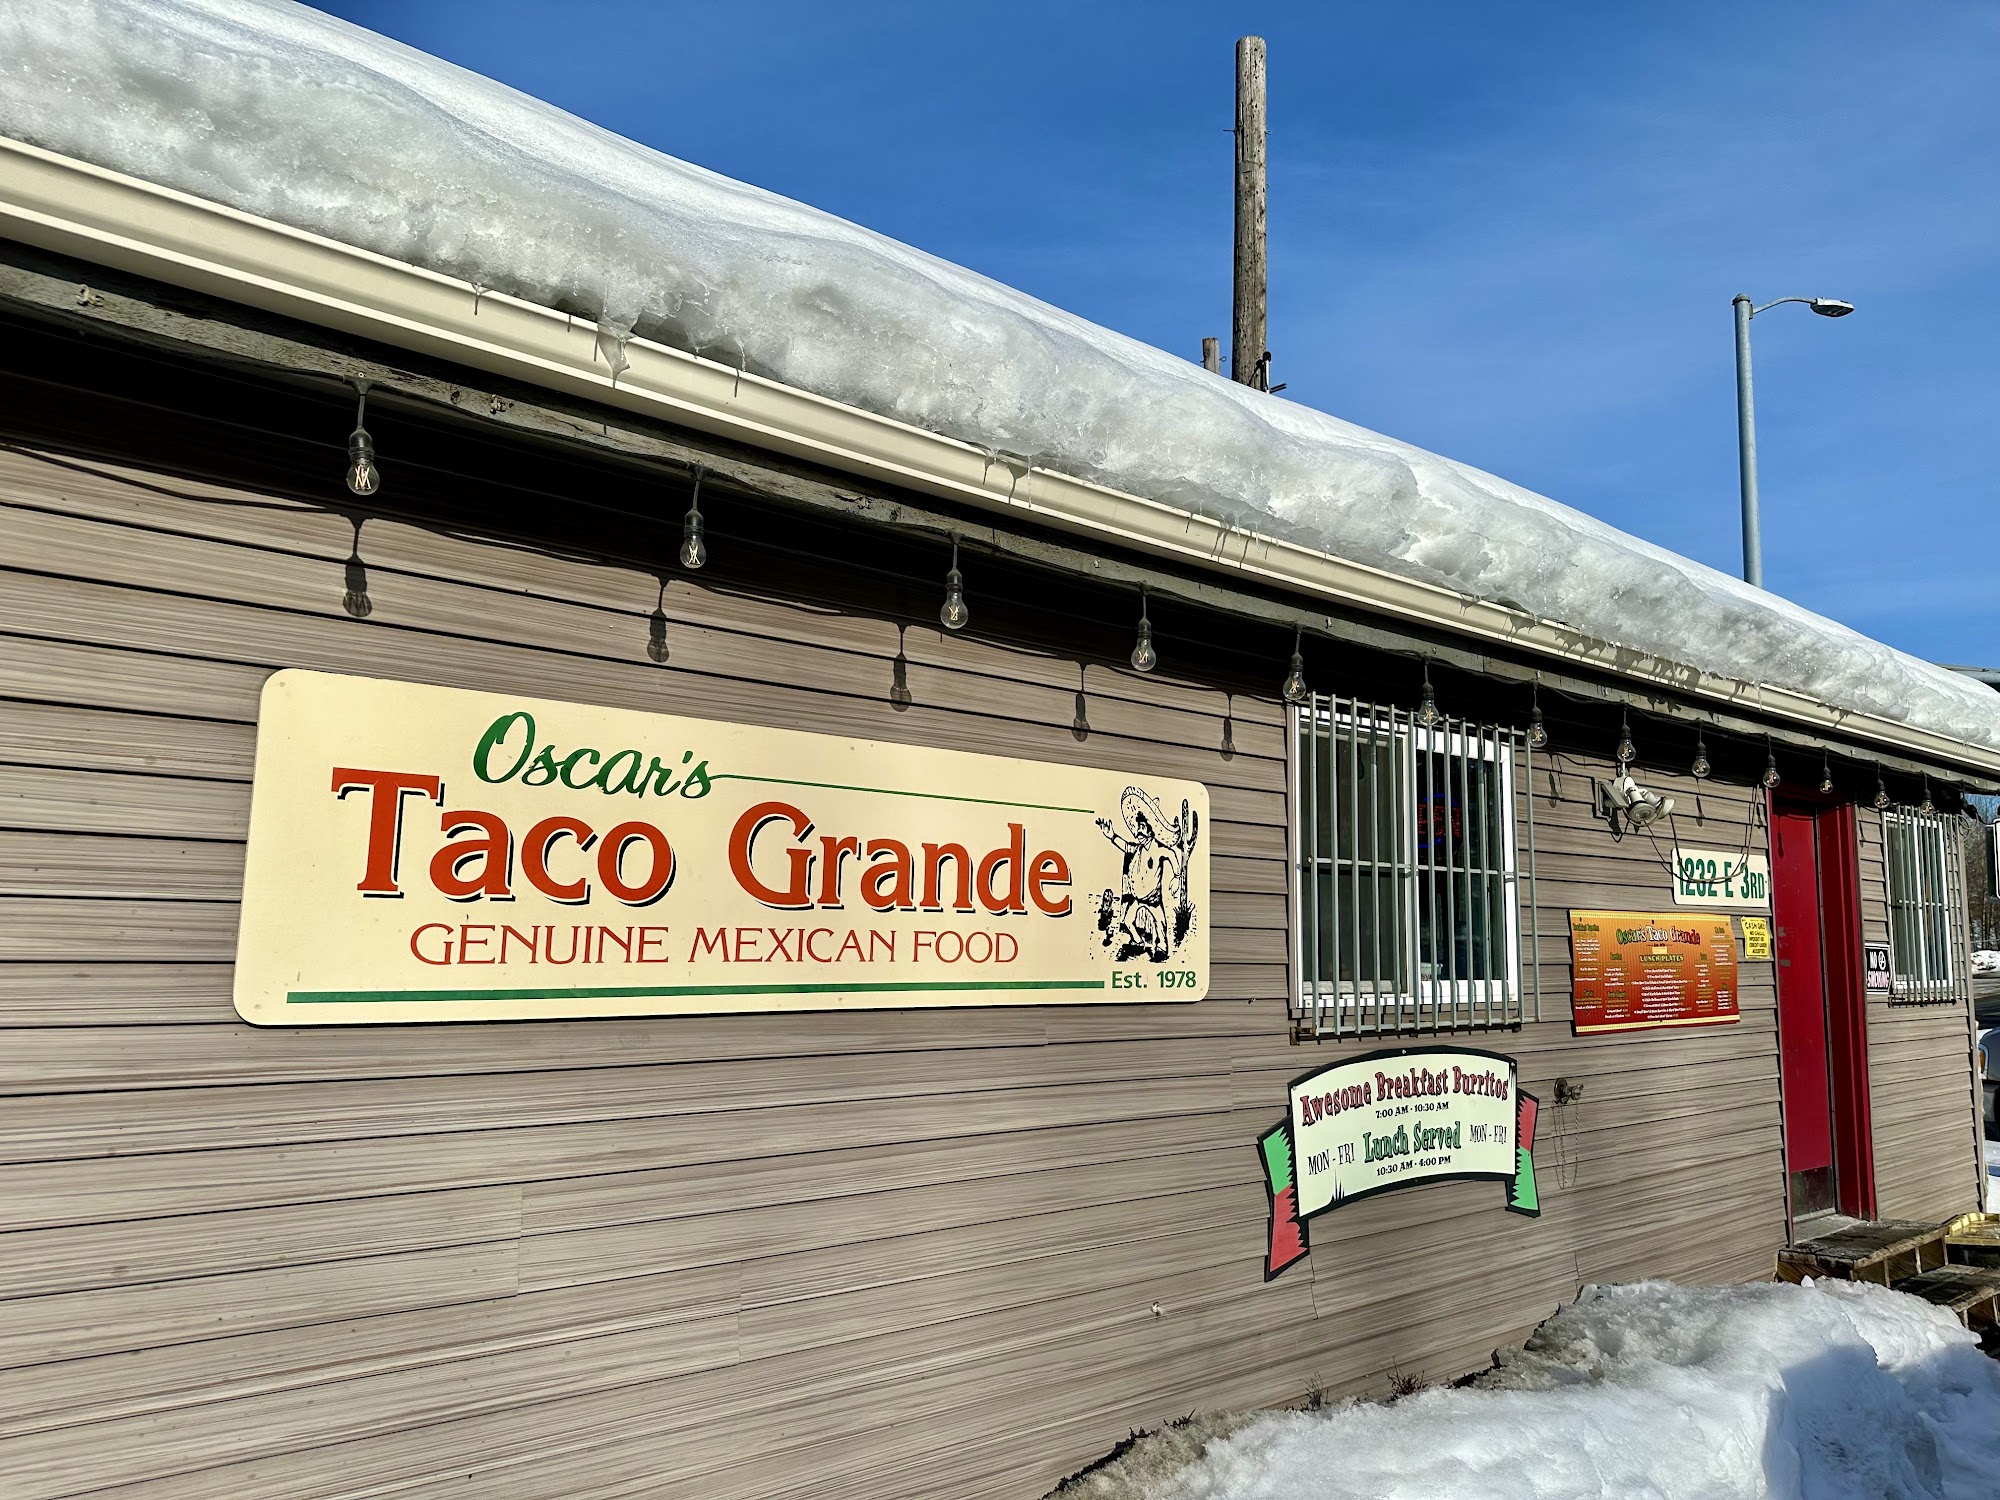 Oscar's Taco Grande